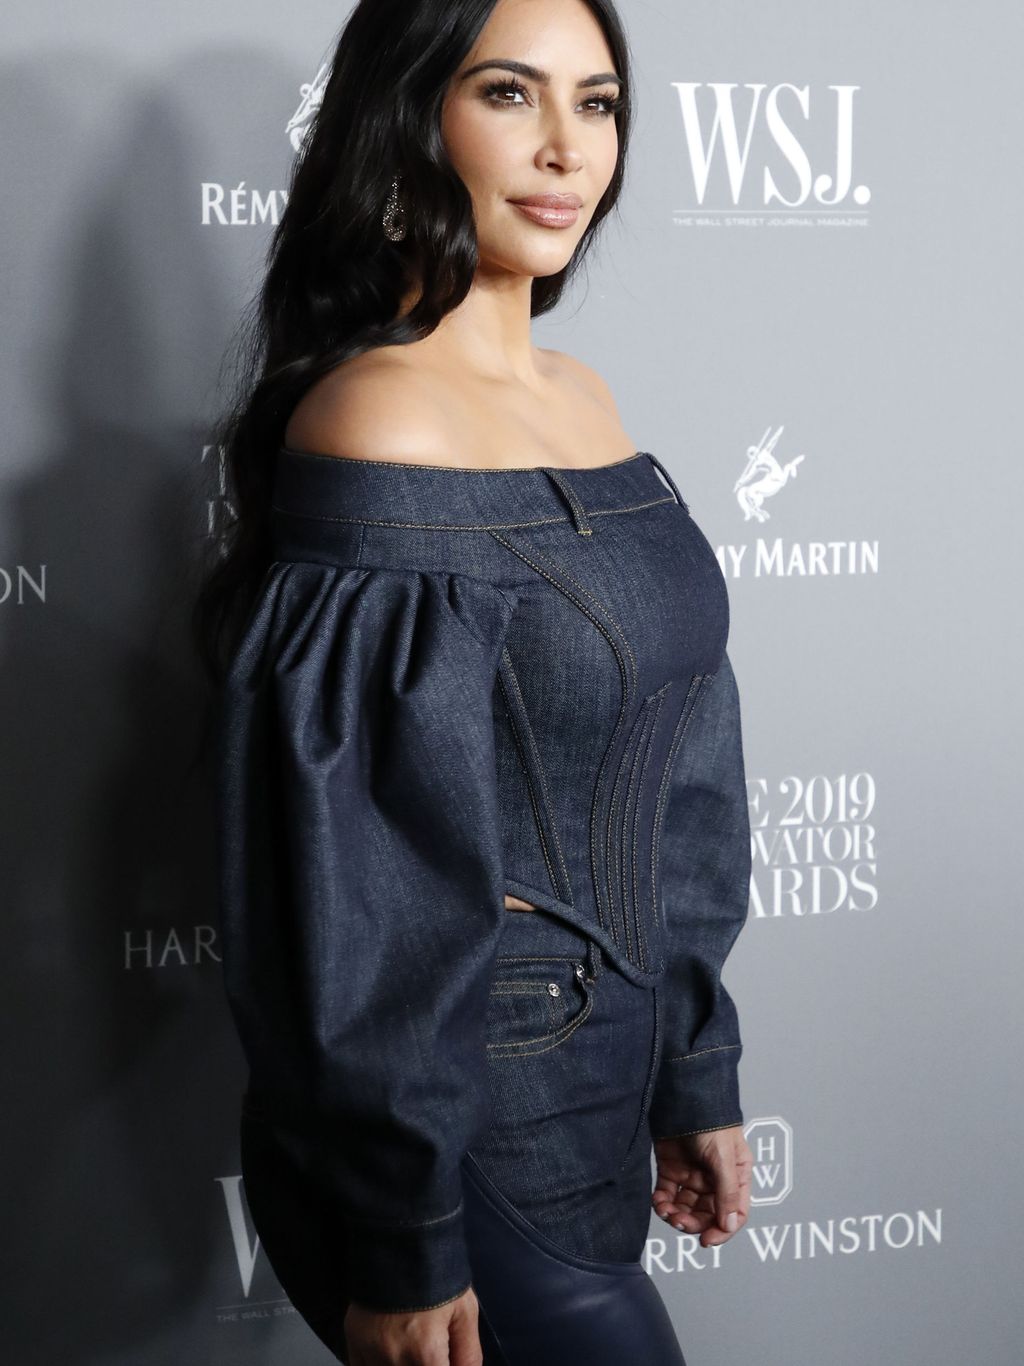 Kim Kardashianin lakiopinnot etenevät – läpäisi haastavana pidetyn kokeen